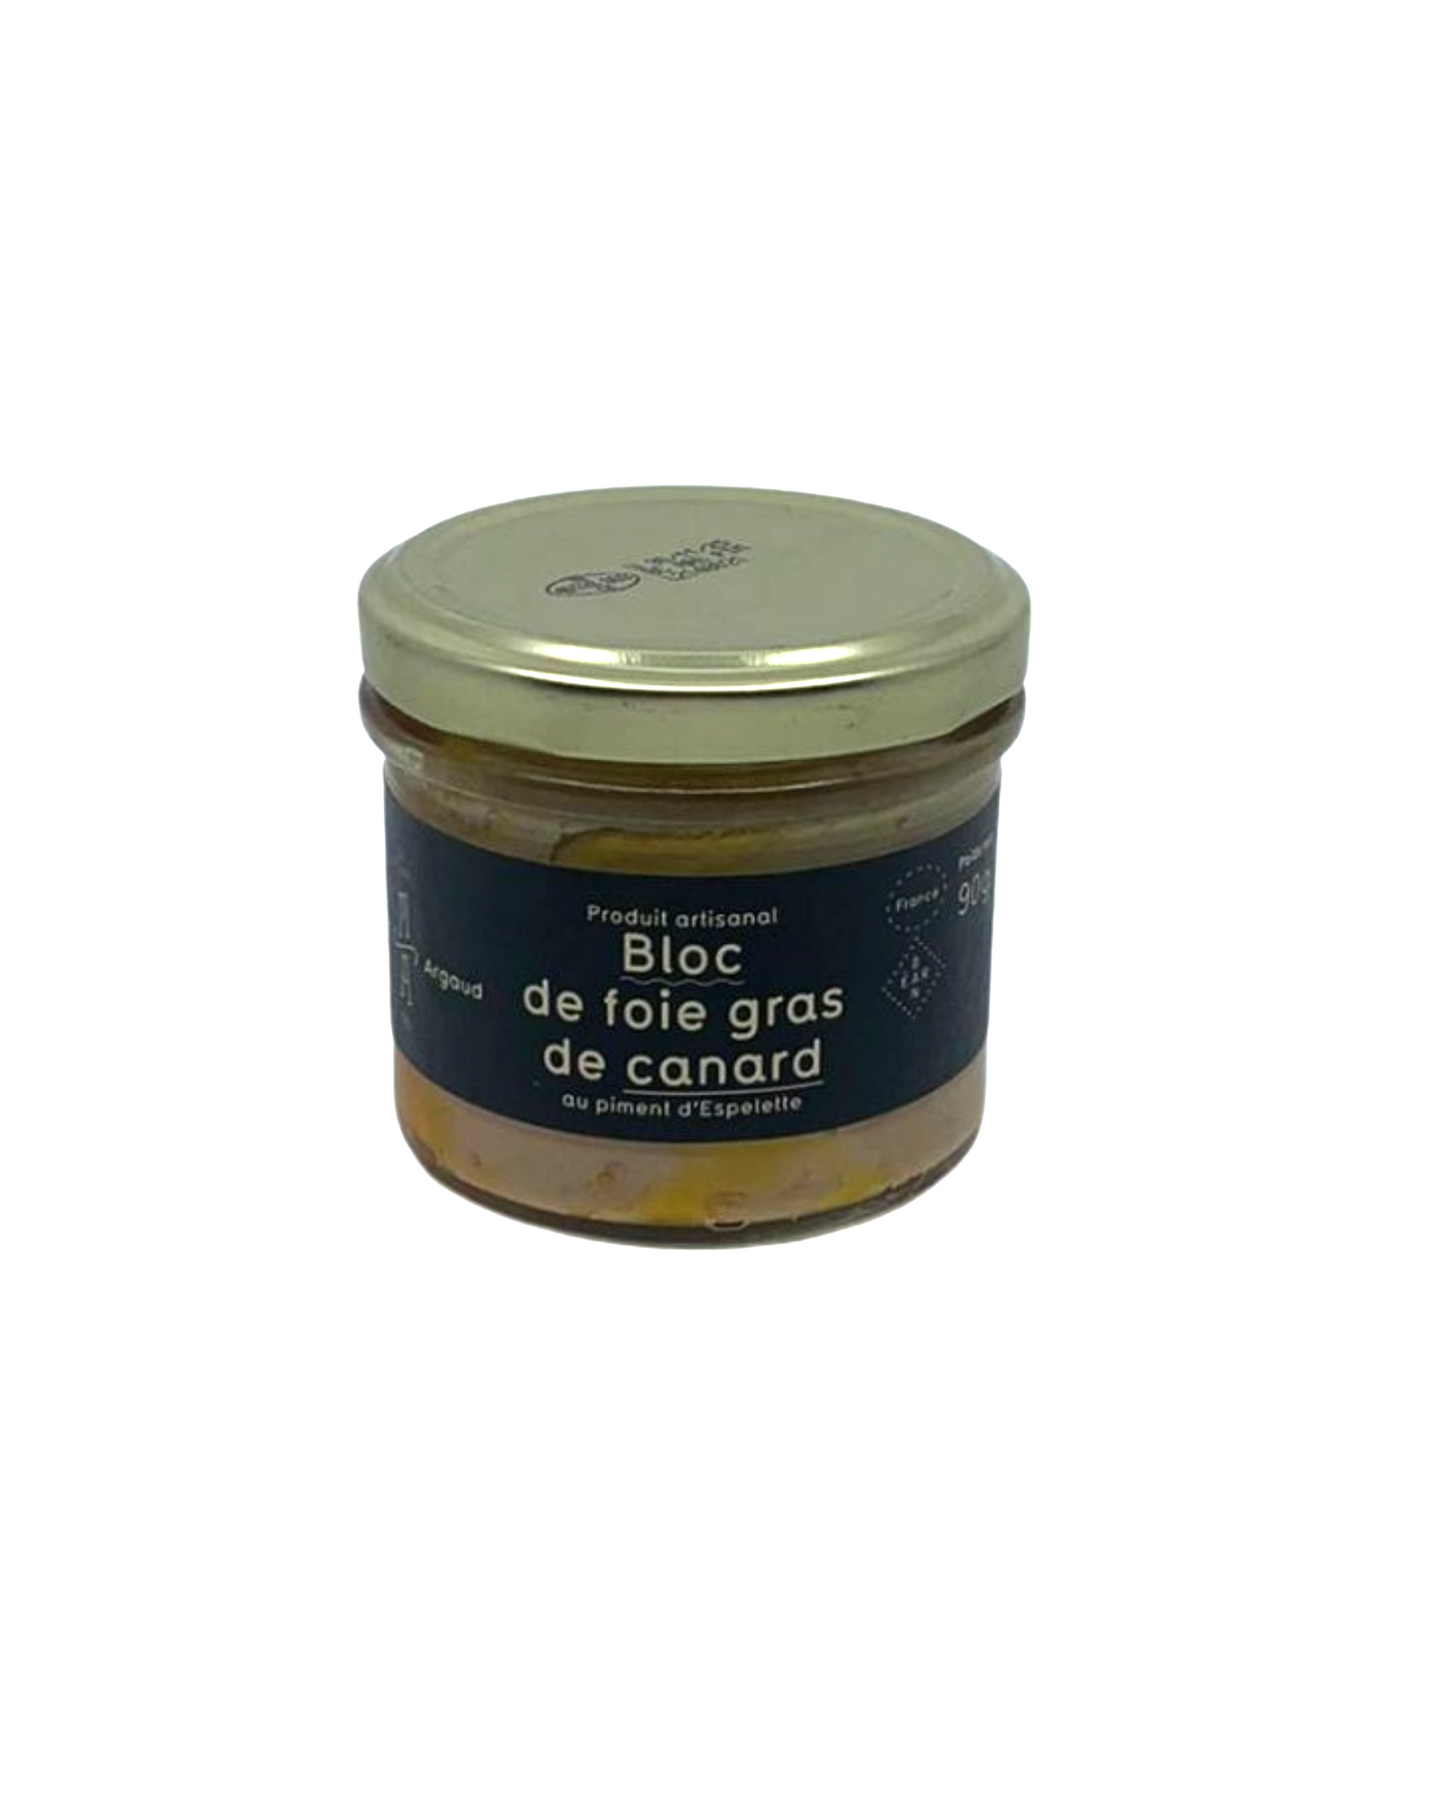 Bloc of duck foie gras w/Espelette chili 